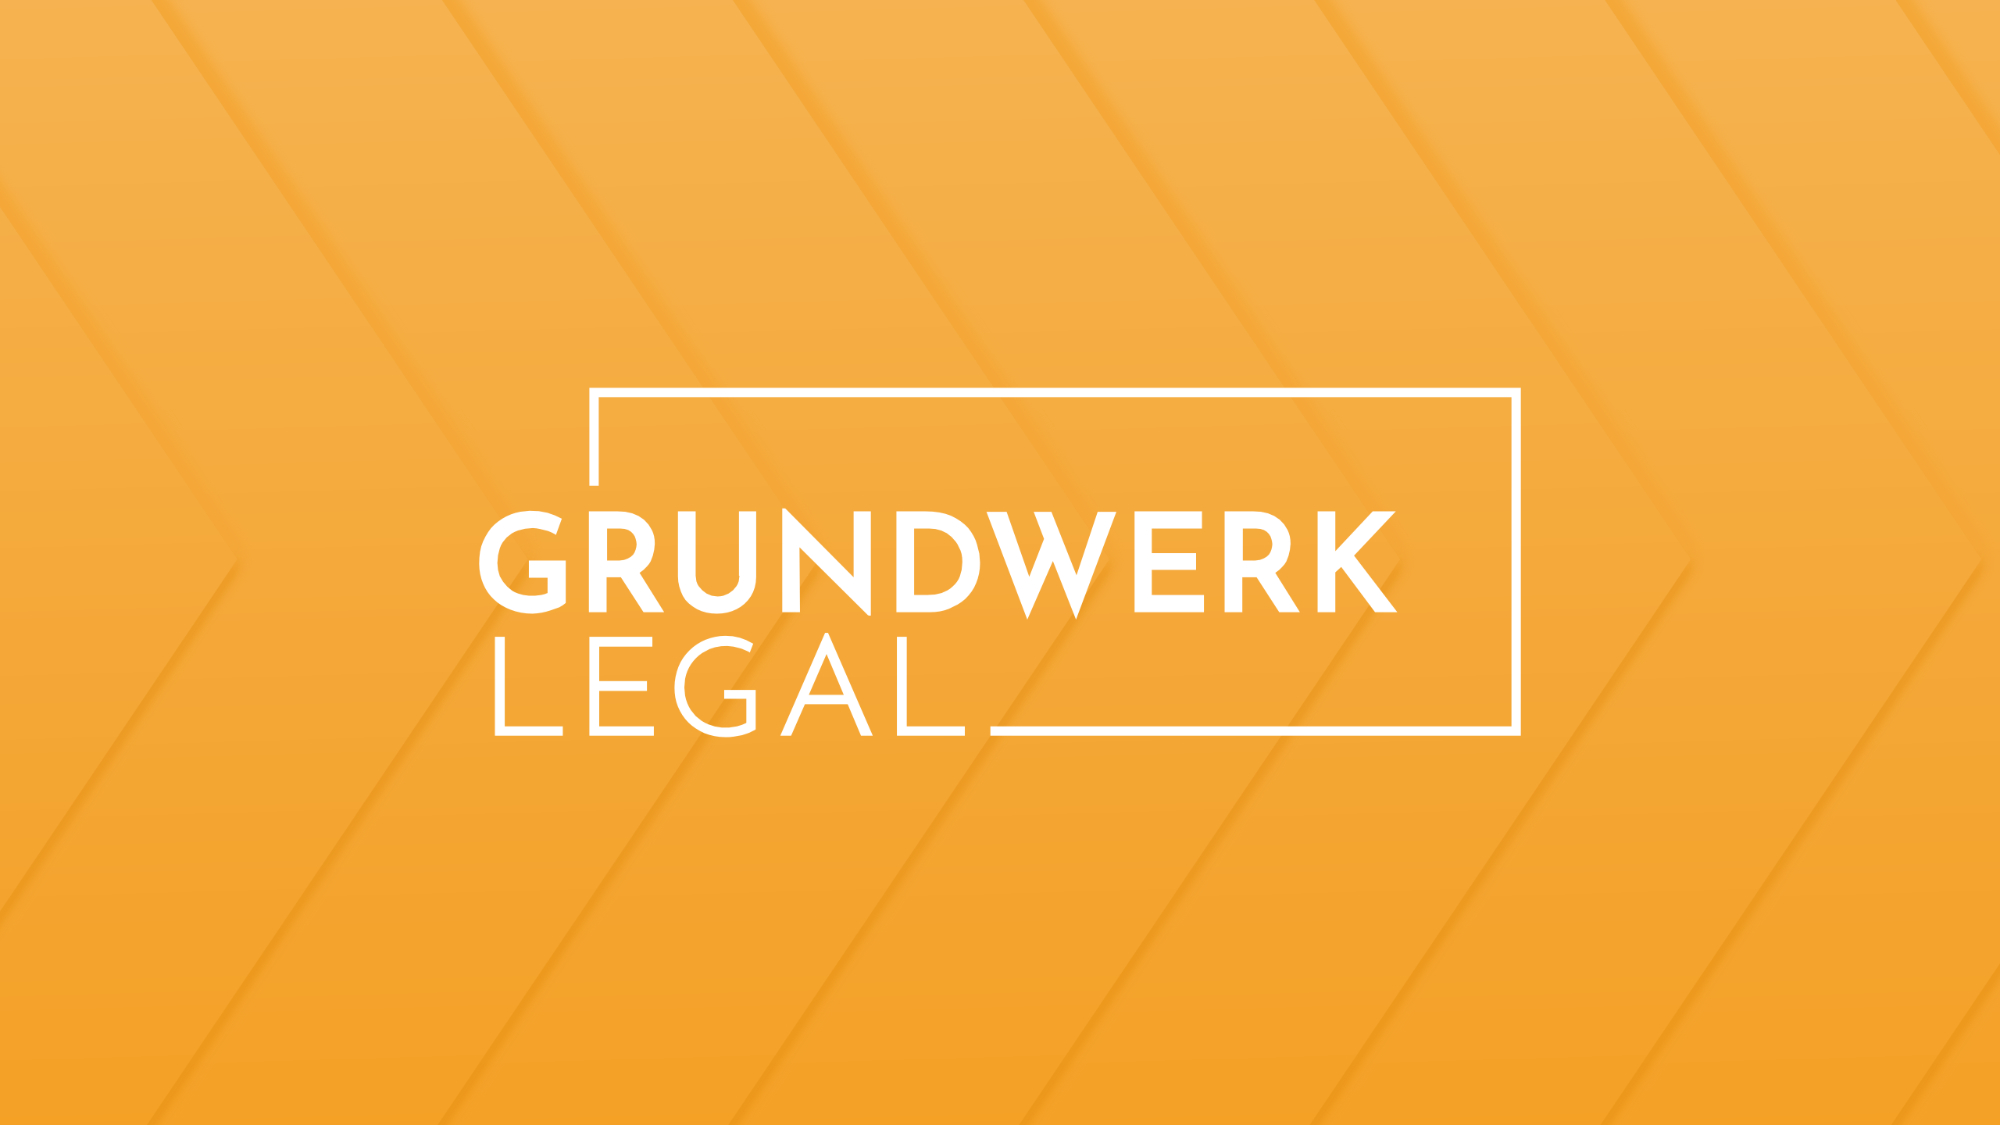 Grundwerk Legal - Arbeitsrecht weitergedacht - Startbild der Website